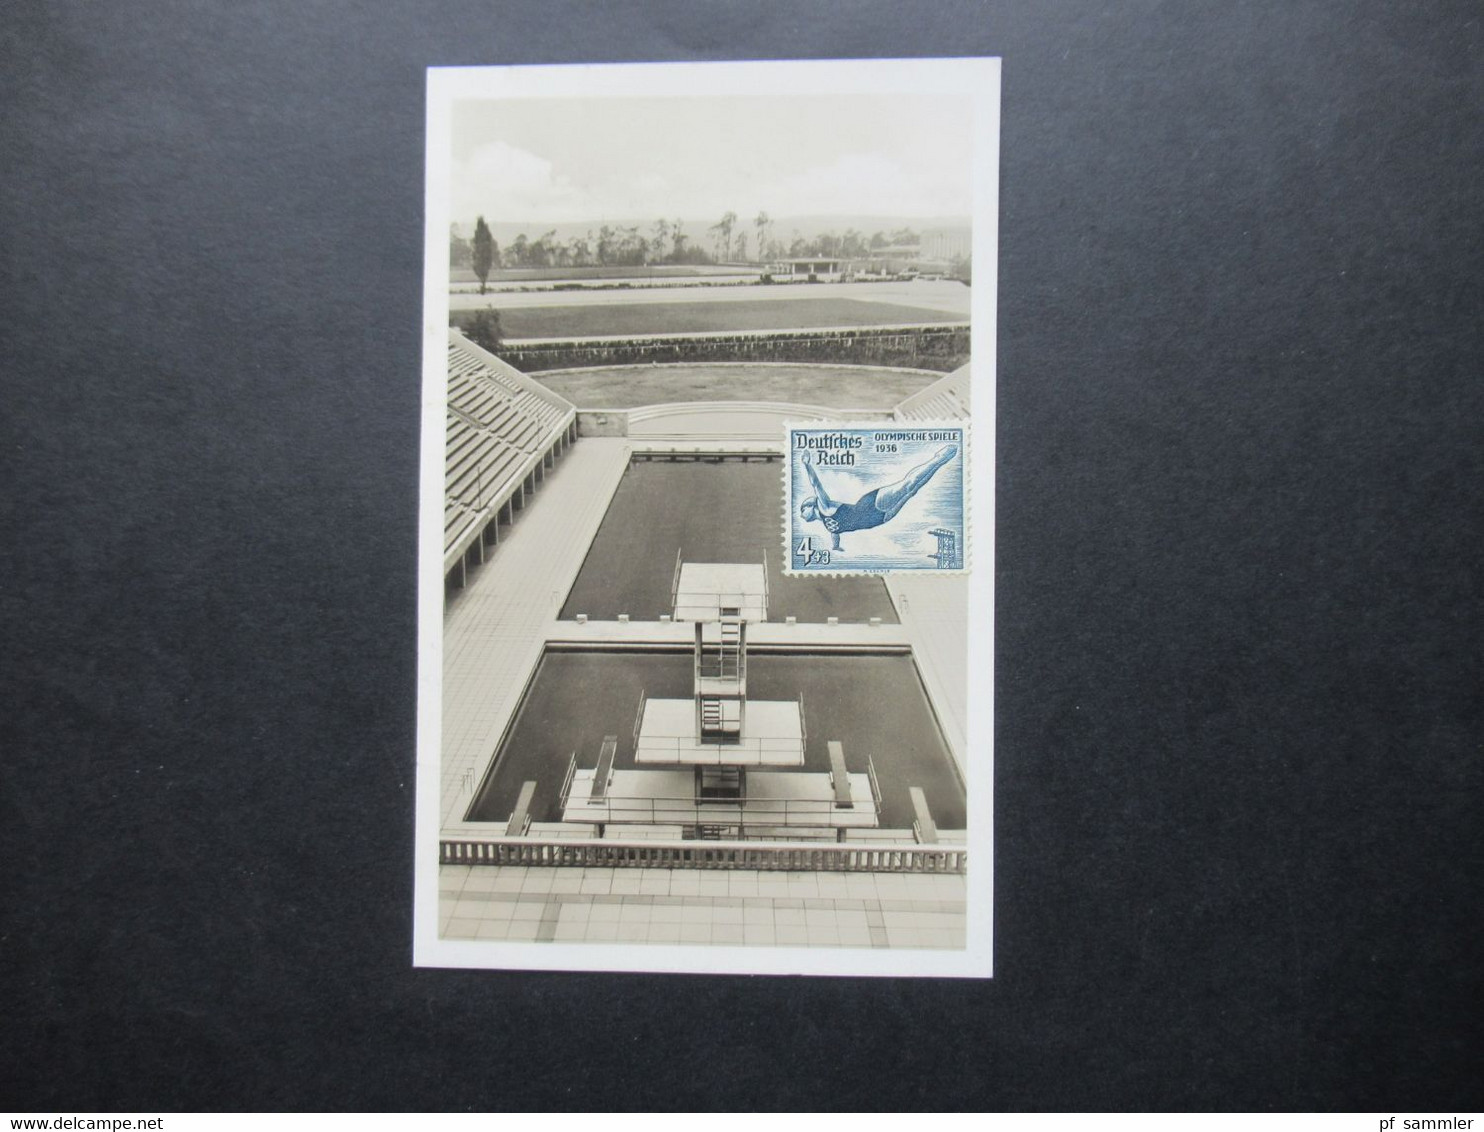 3.Reich Olympia 1936 Echtfoto AK Reichssportfeld Schwimmstadion Reichssportverlag Verwendet 1984 In Der BRD - Olympic Games